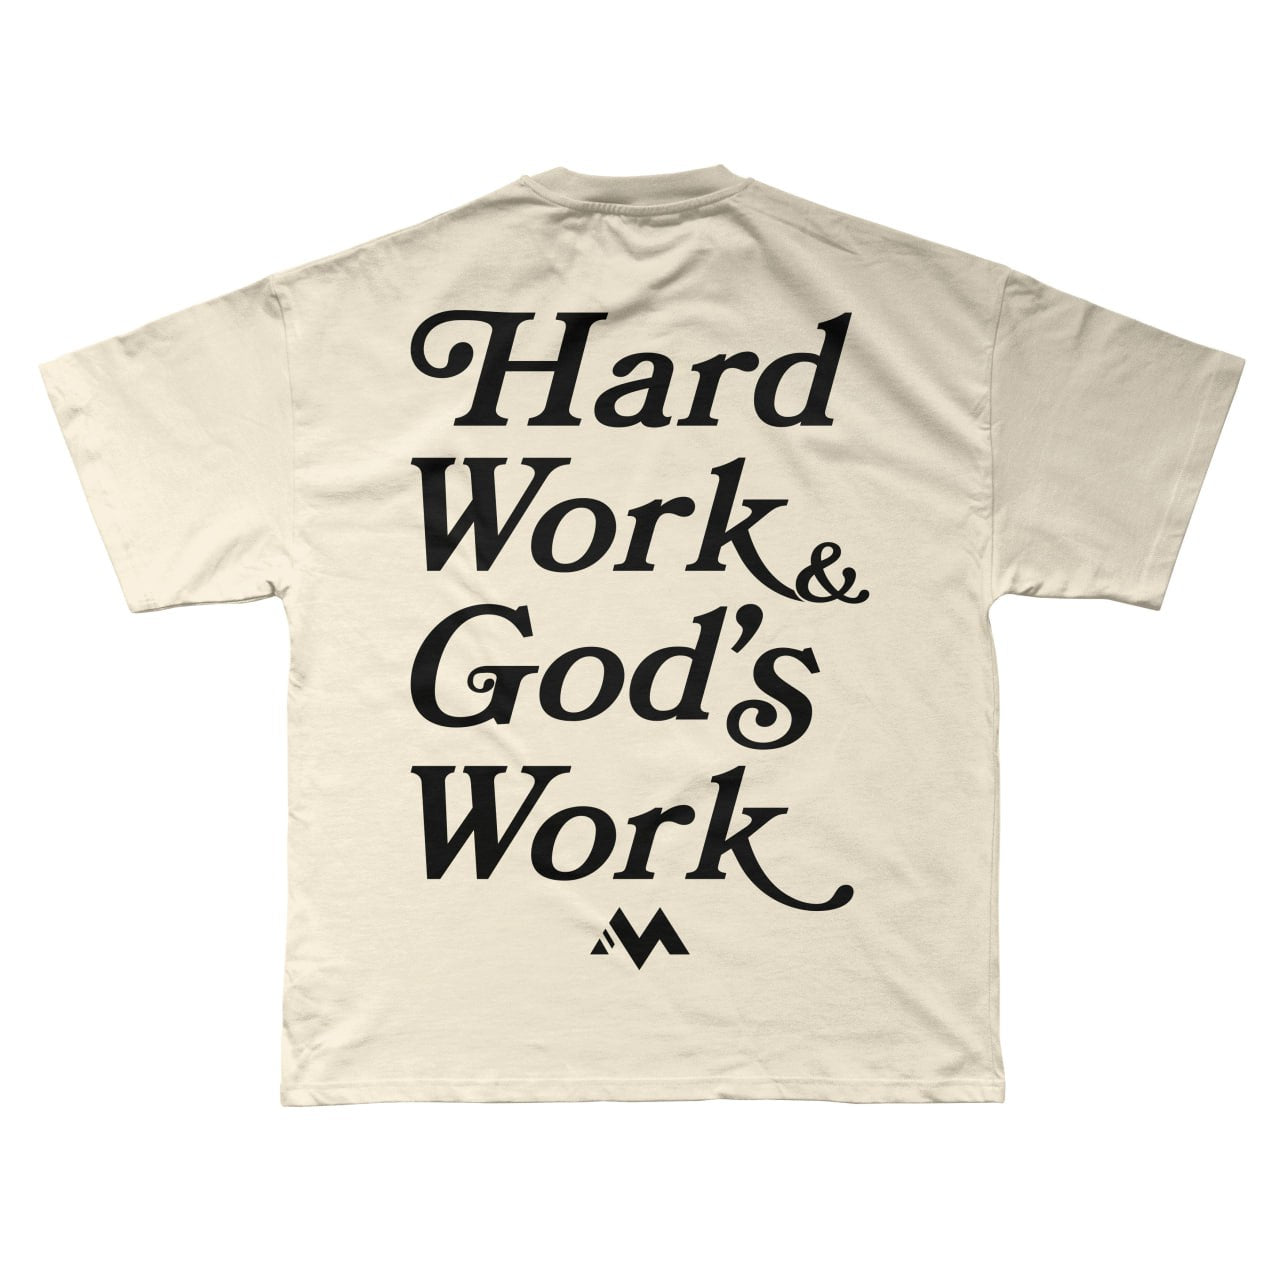 'HARD WORK & GOD'S WORK' TEE - BONE